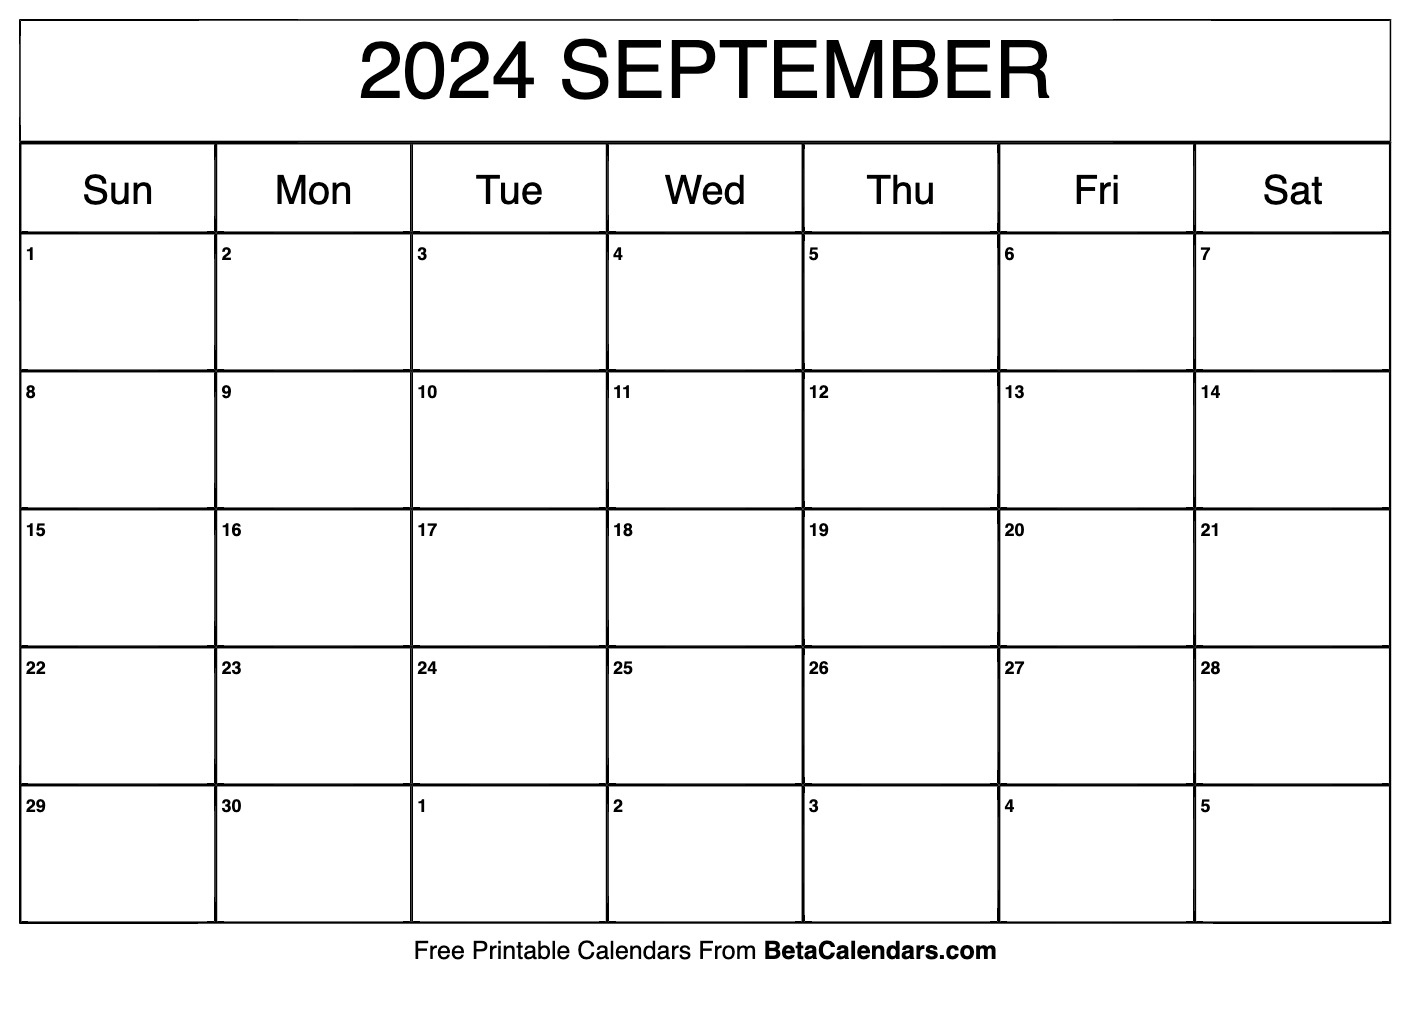 Free Printable September 2024 Calendar intended for Free Printable Calendar 2024 Sept December